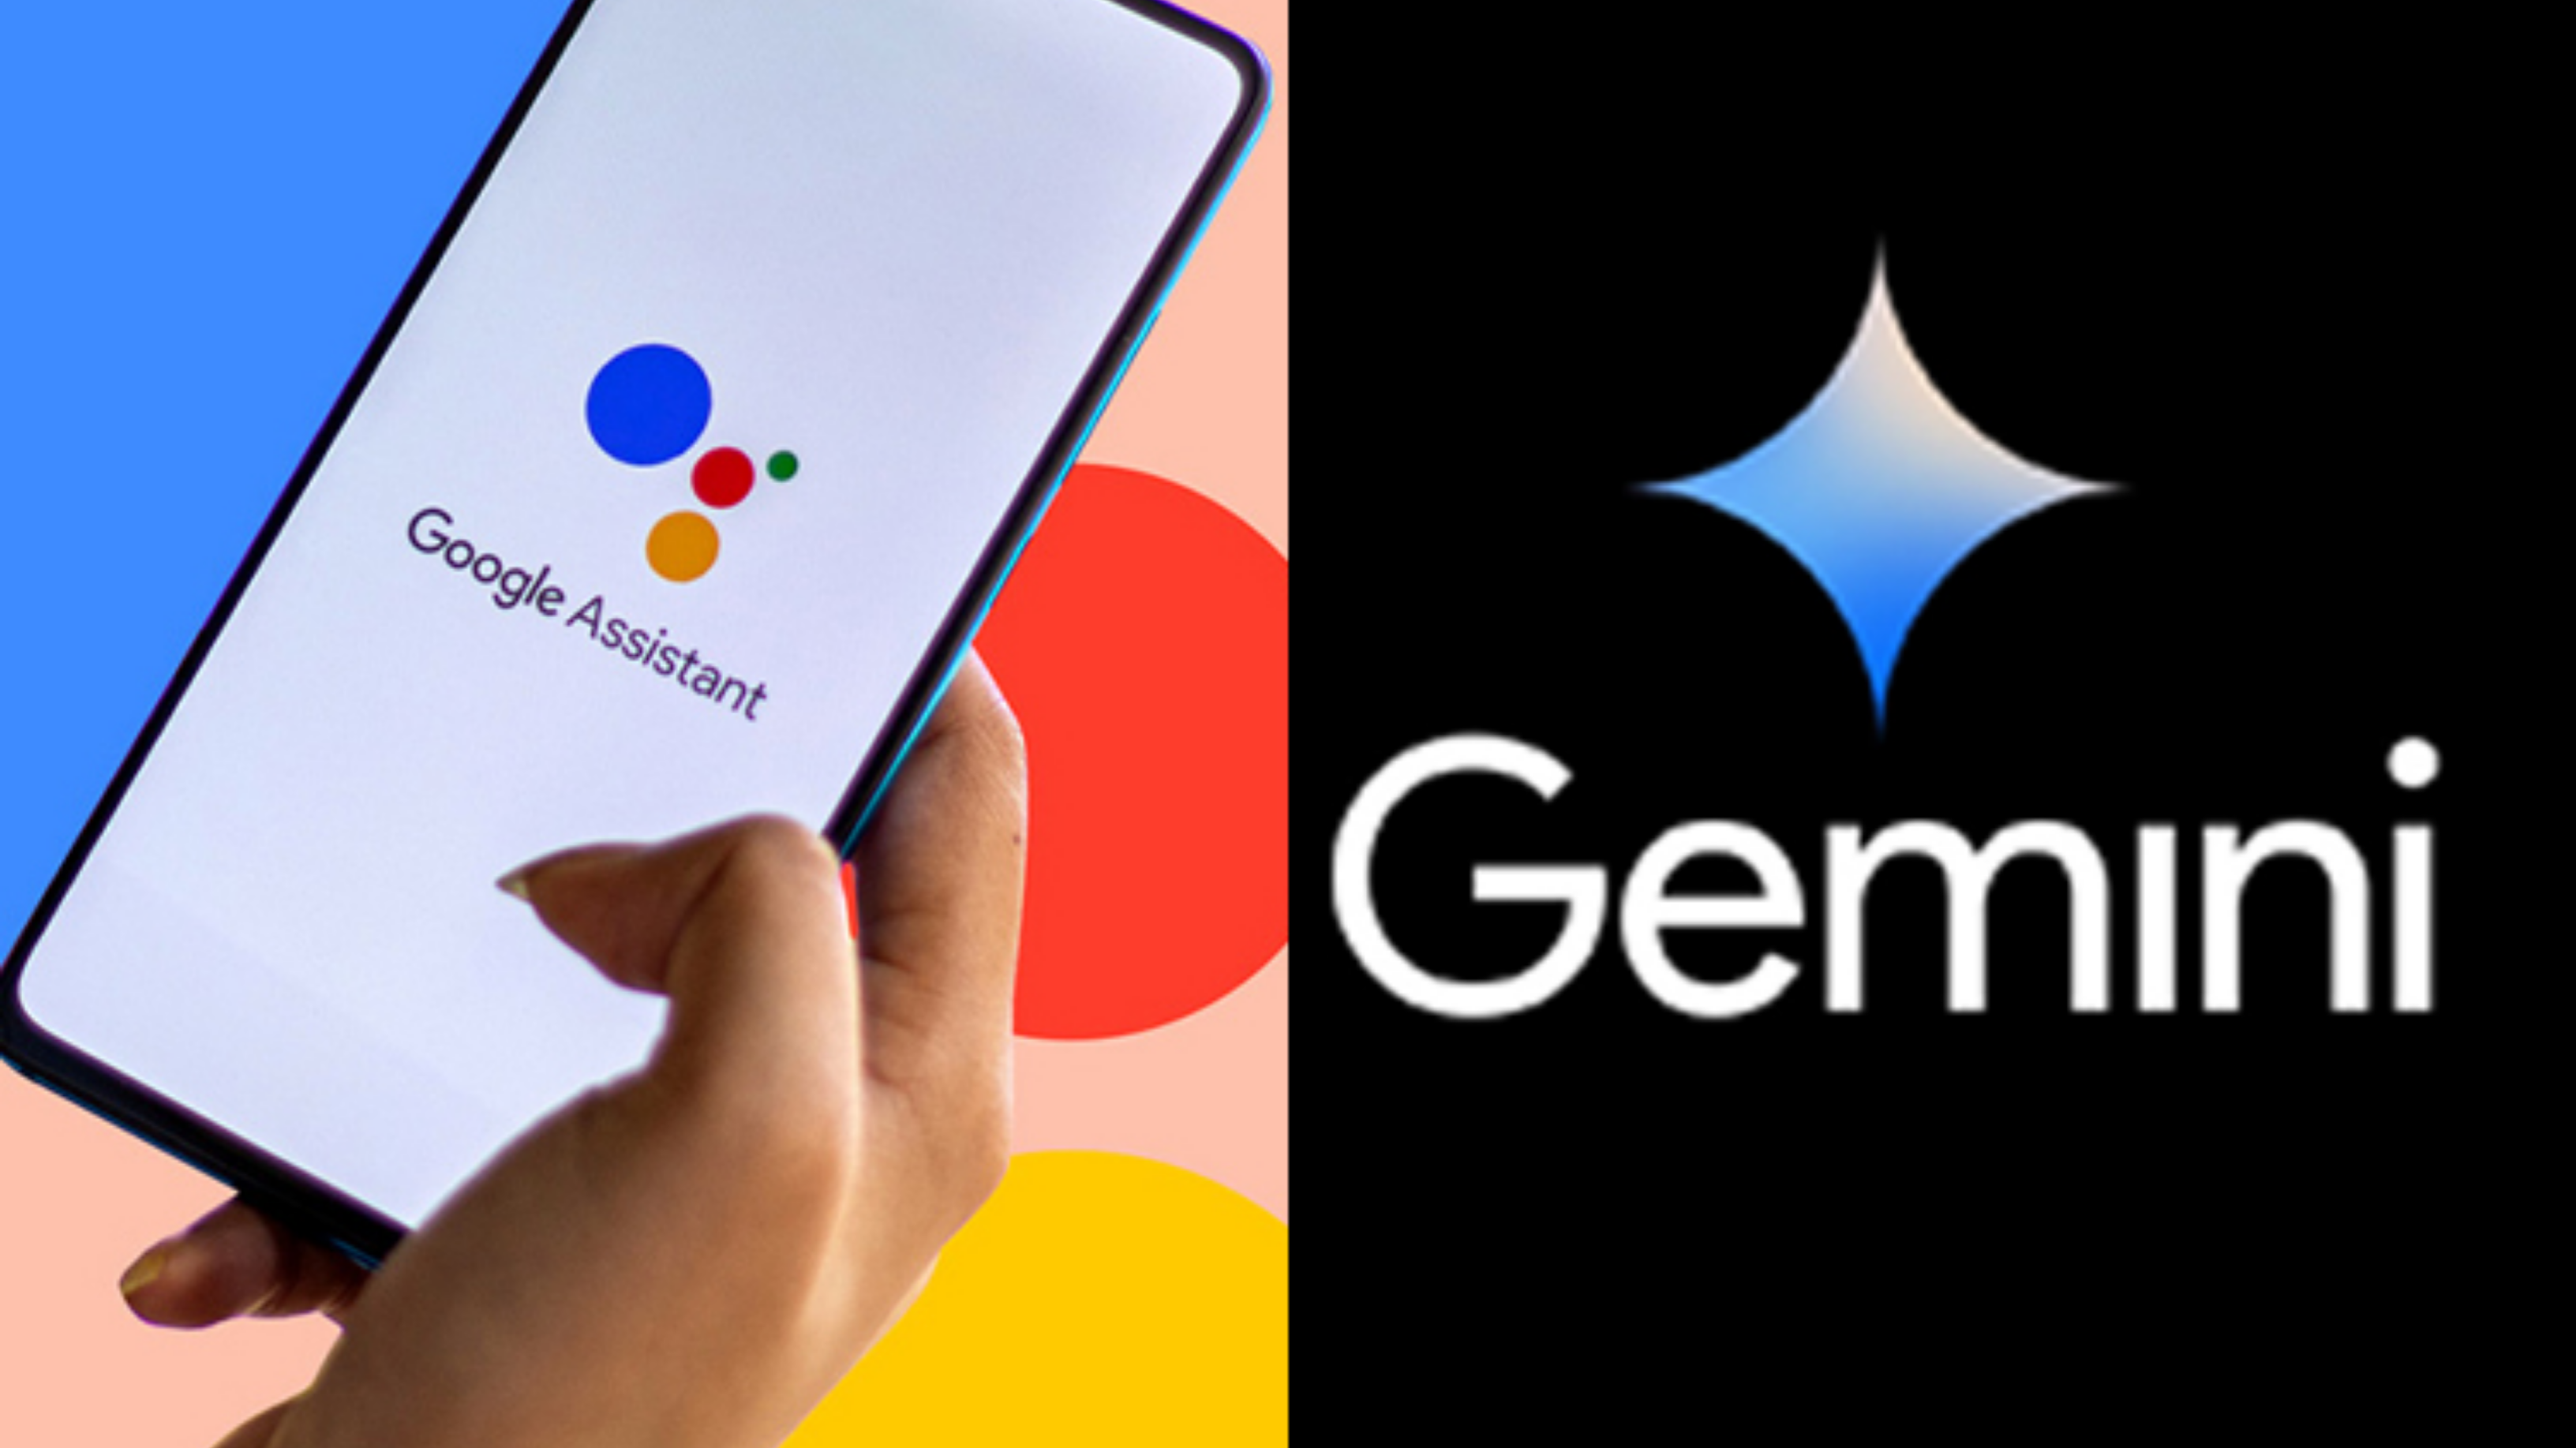 Gemini is replacing Google Assistant